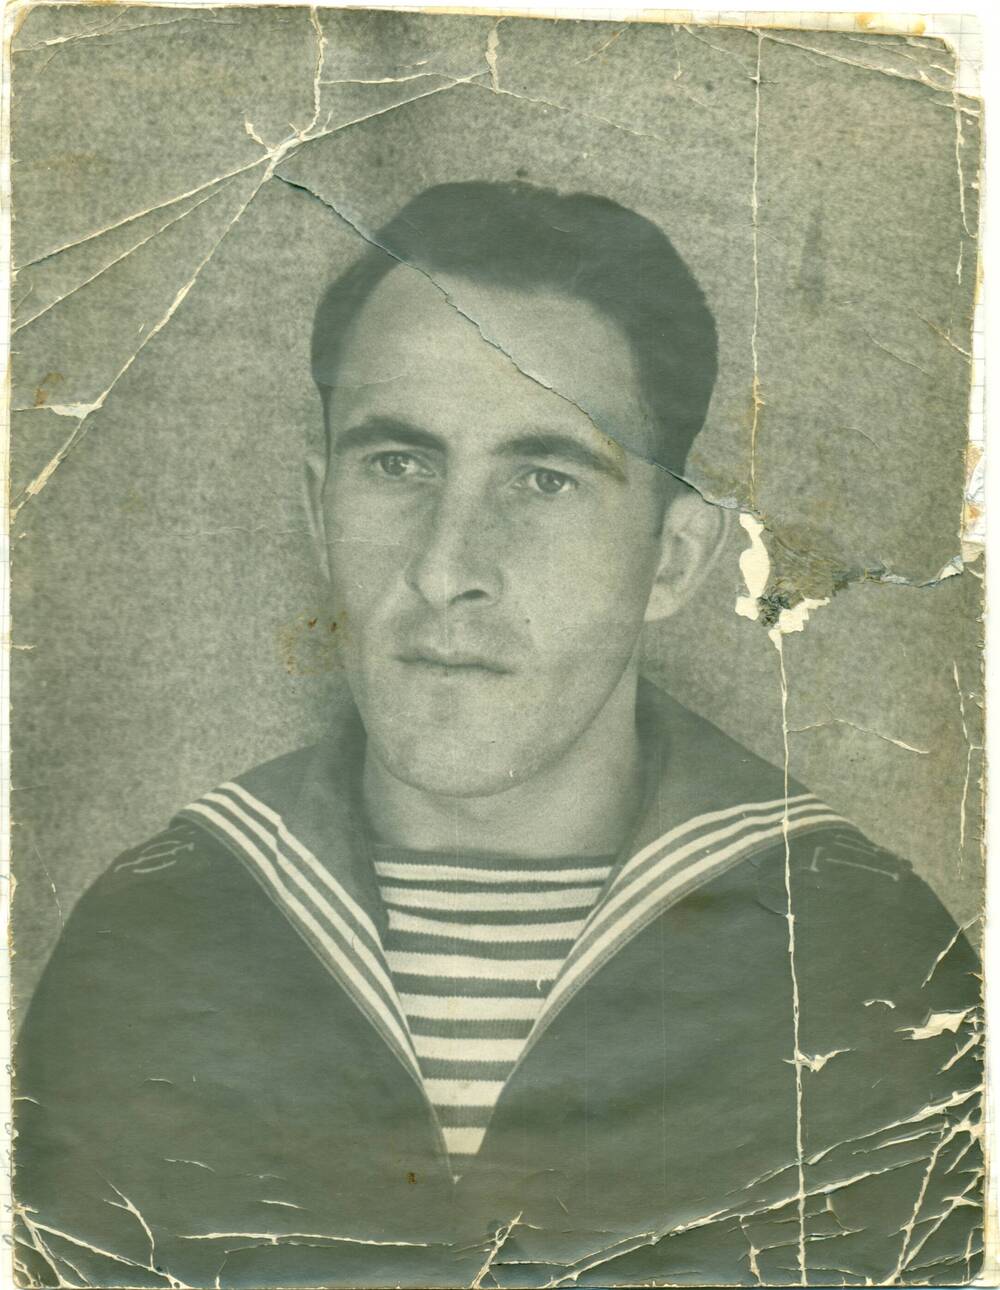 Фотография чёрно-белая: Грижневич Александр Петрович- железнодорожник, в форме моряка.